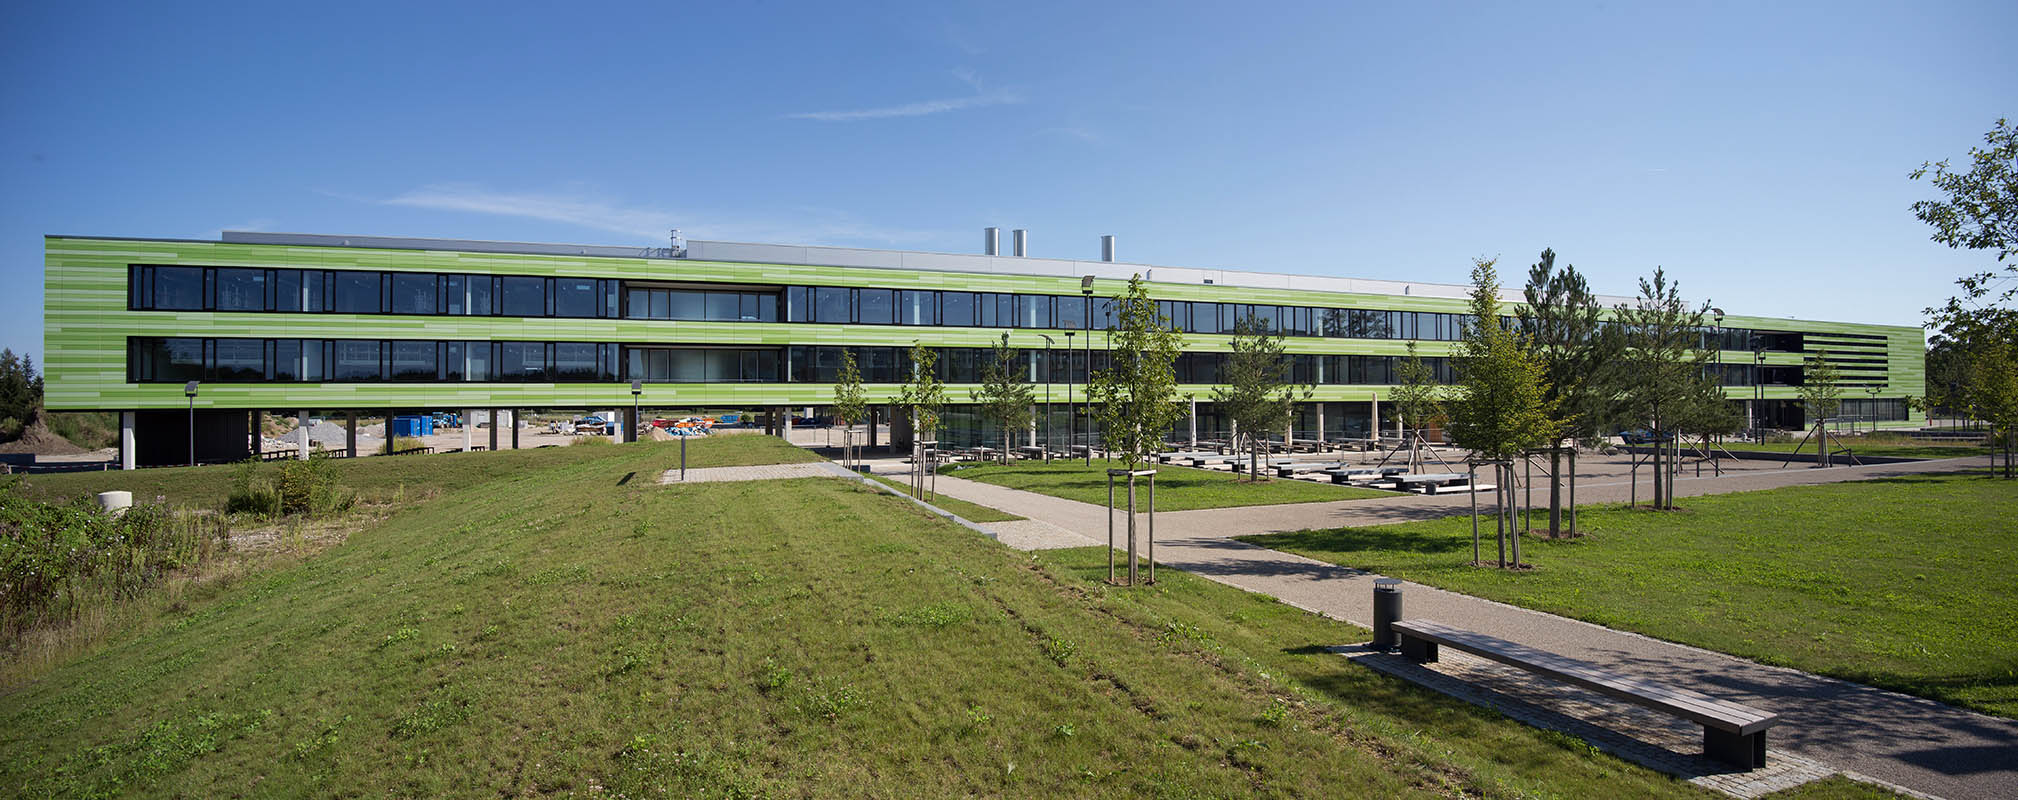 BMC München (BioMedizinisches Centrum der LMU München) - K9 Architekten - Leopold Piribauer